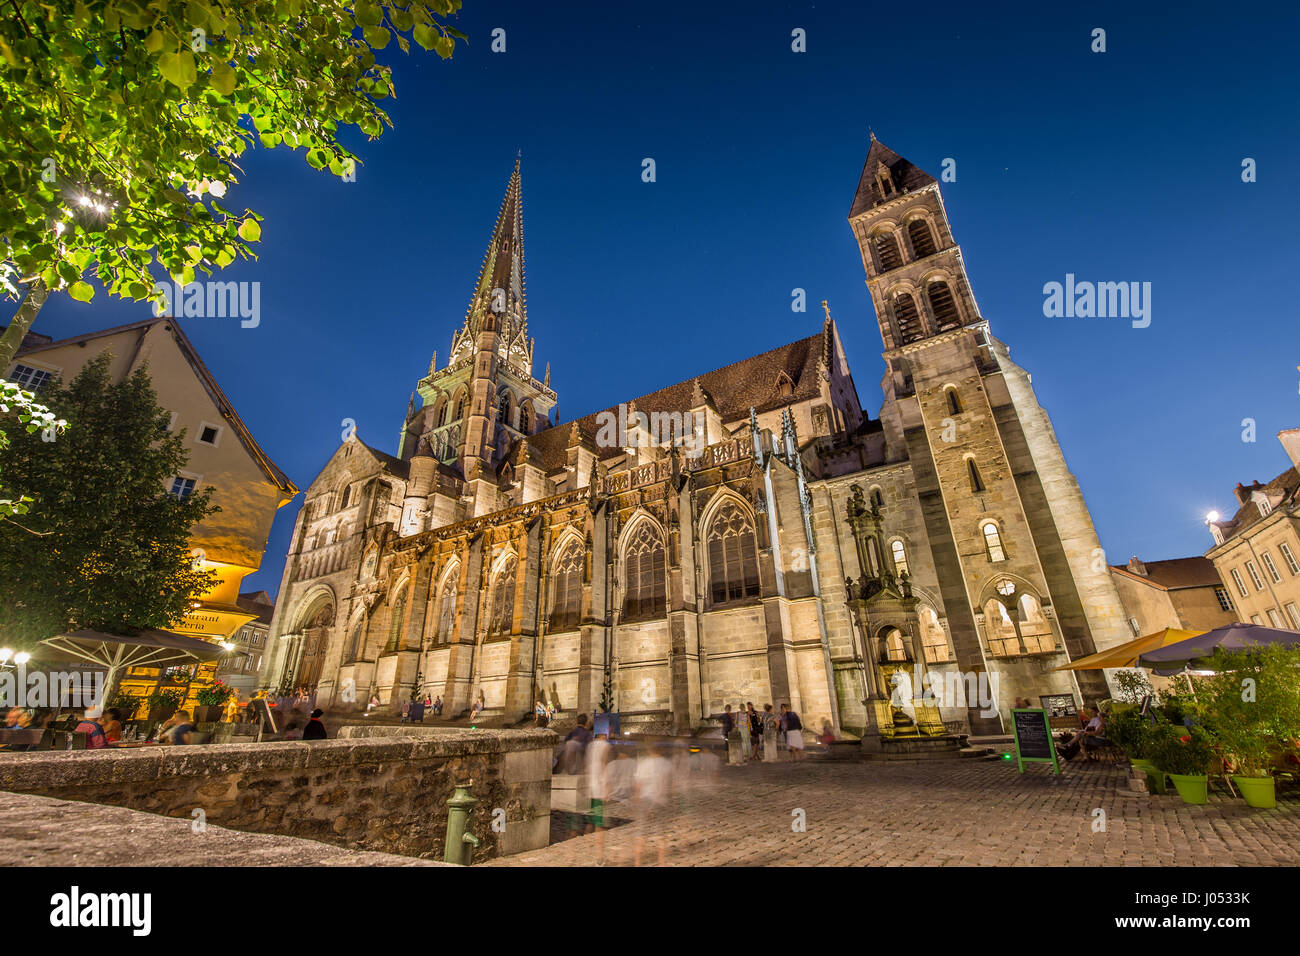 Historische Stadt von Autun mit berühmten Kathedrale Saint-Lazare Autun beleuchtet in schöne Dämmerung während der blauen Stunde in der Abenddämmerung, Saone-et-Loire, Frankreich Stockfoto